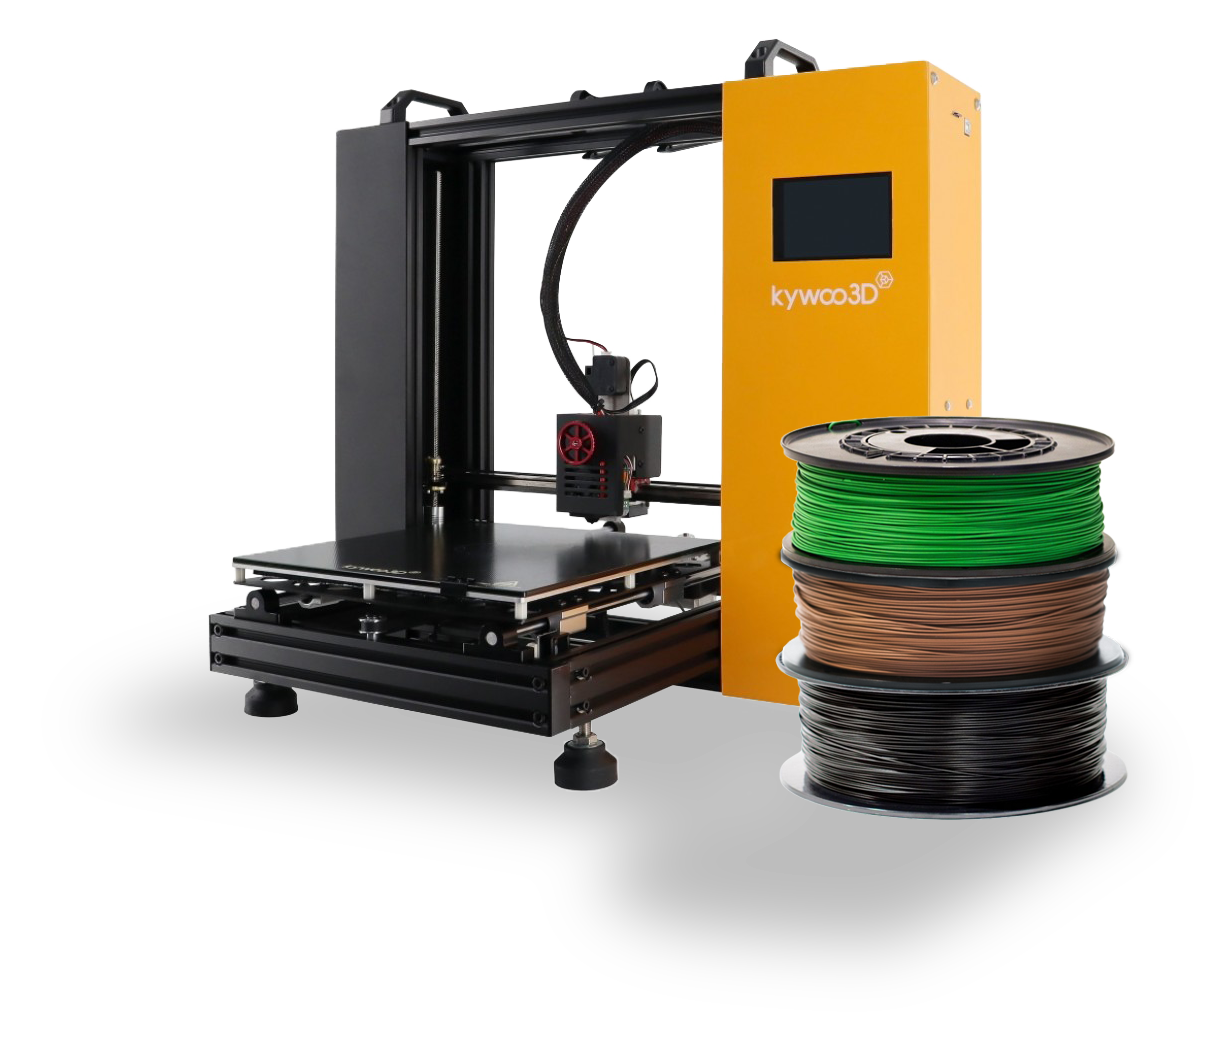 Kywoo 3D 3D printeris ar drukas izejmateriāliem 3D printēšanai